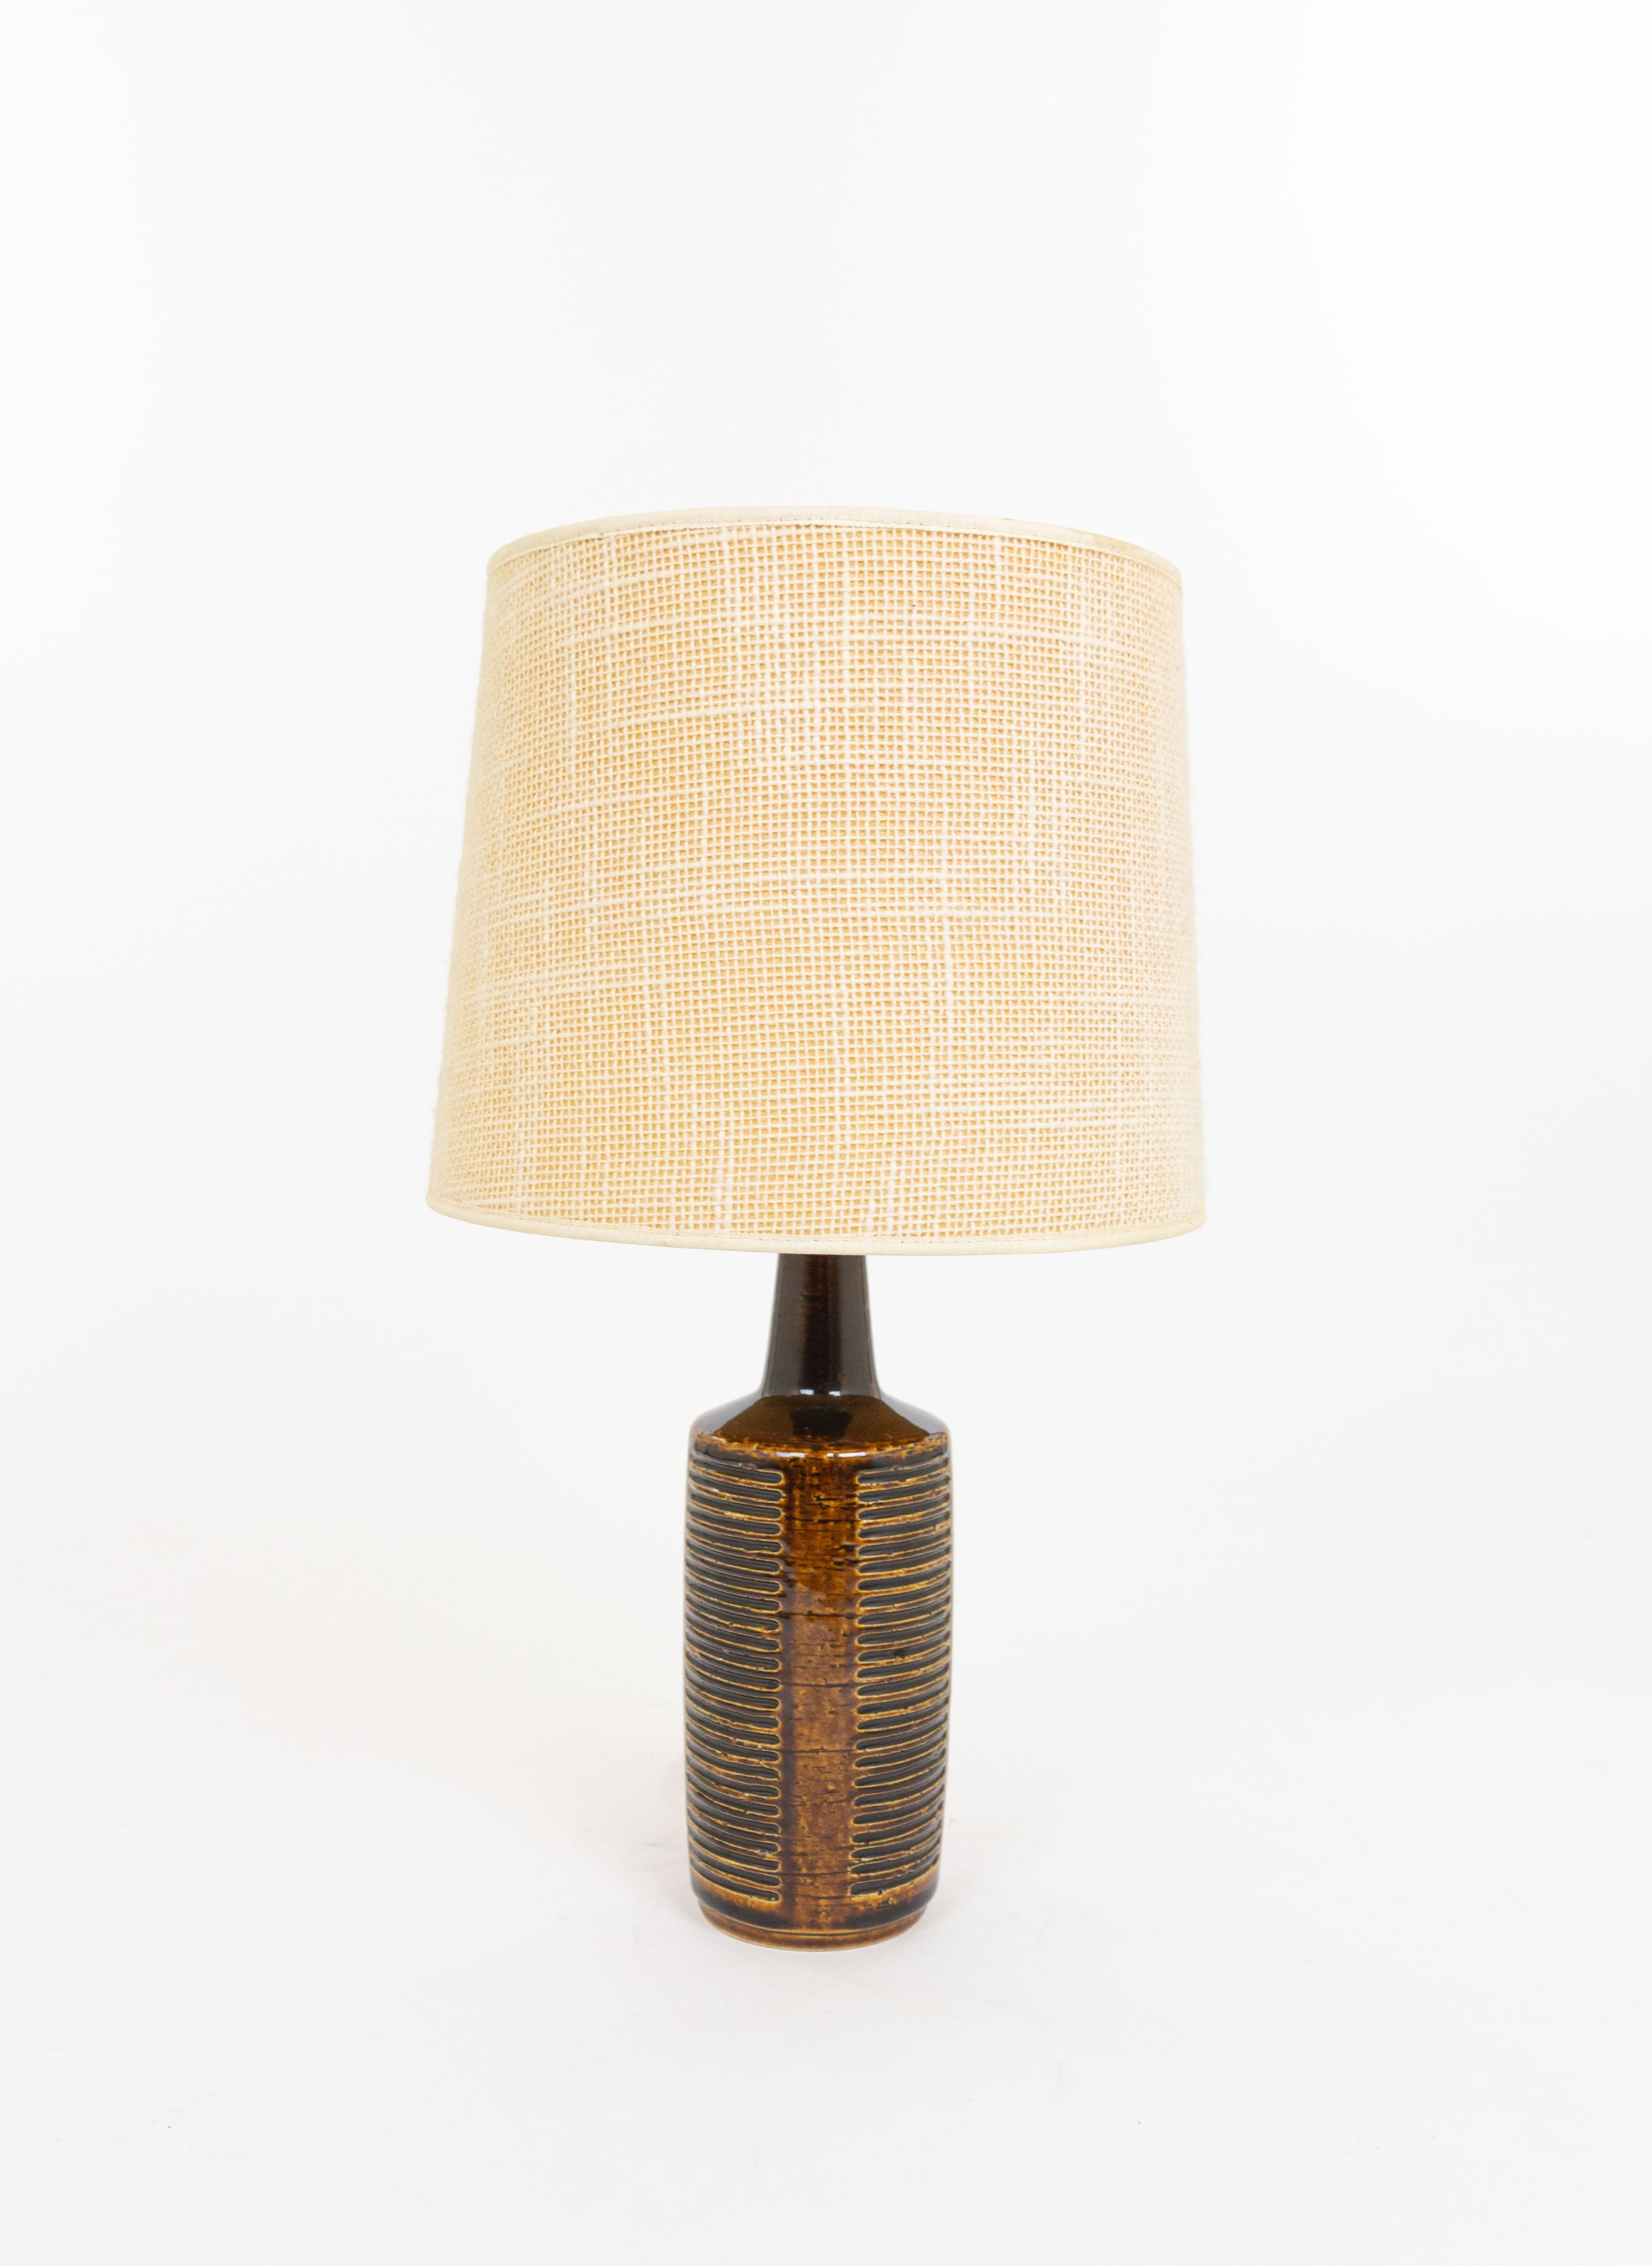 Scandinavian Modern Chestnut Brown DL/30 table lamp by Linnemann-Schmidt for Palshus, 1960s For Sale